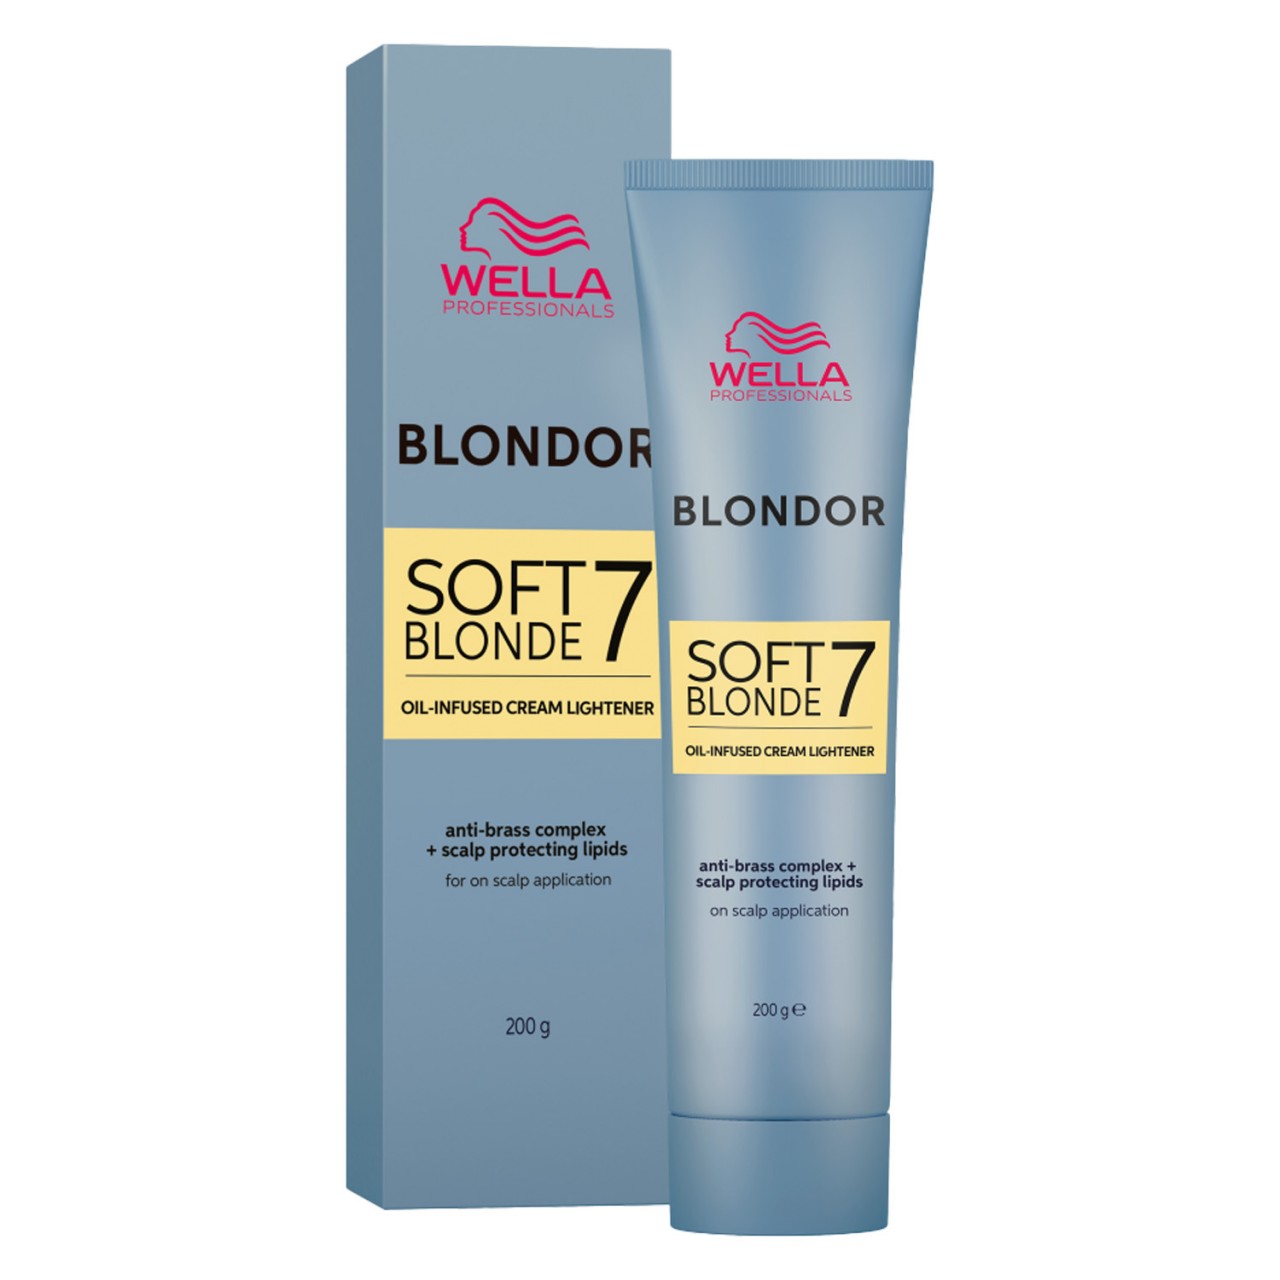 Blondor - Soft Blonde Cream von Wella